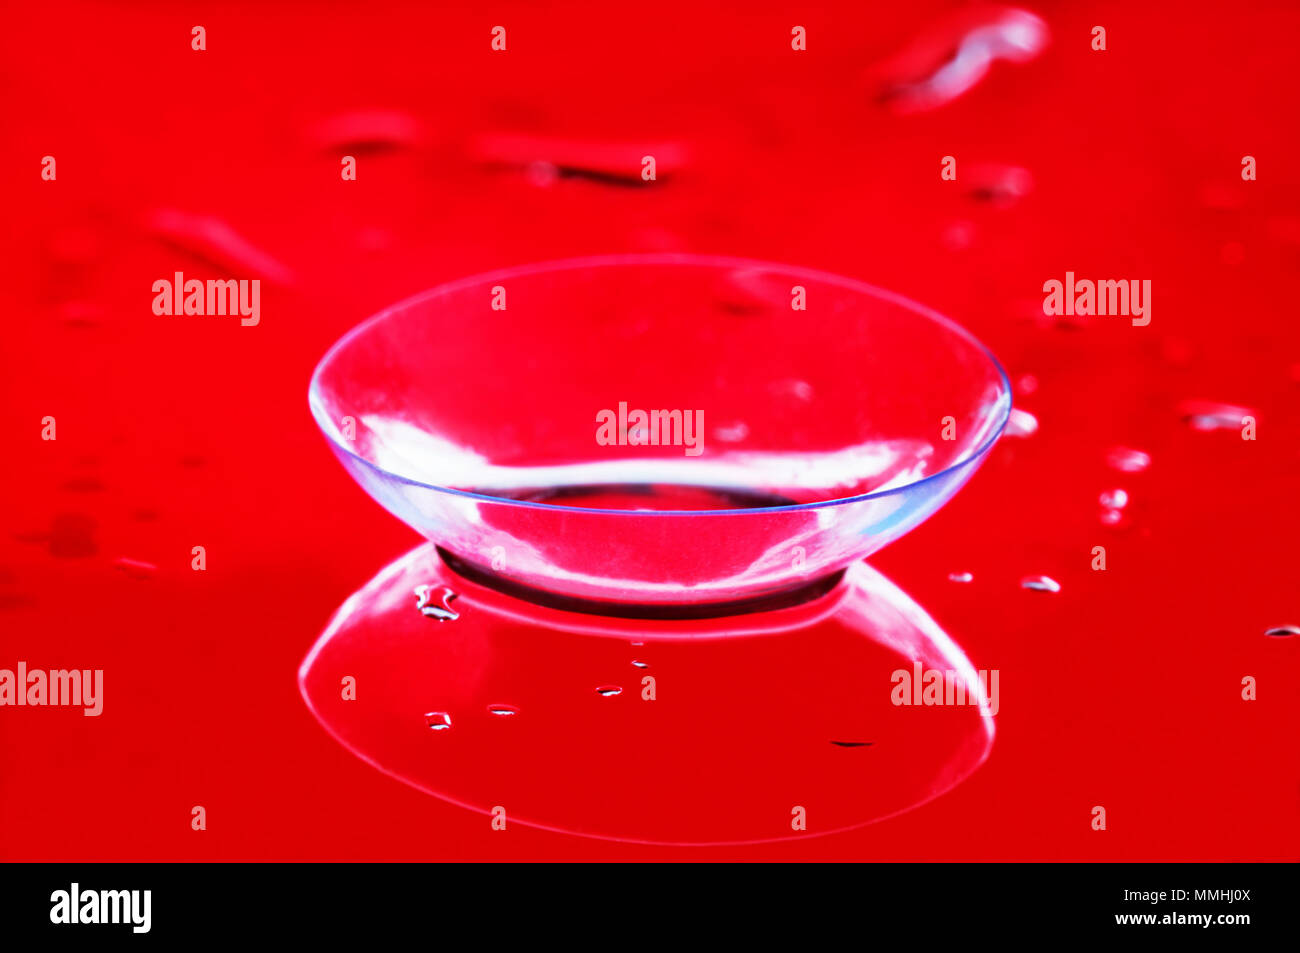 Uno trasparente lente a contatto per la correzione vista da vicino. Specchio superficie bagnata, comune sfondo rosso Foto Stock